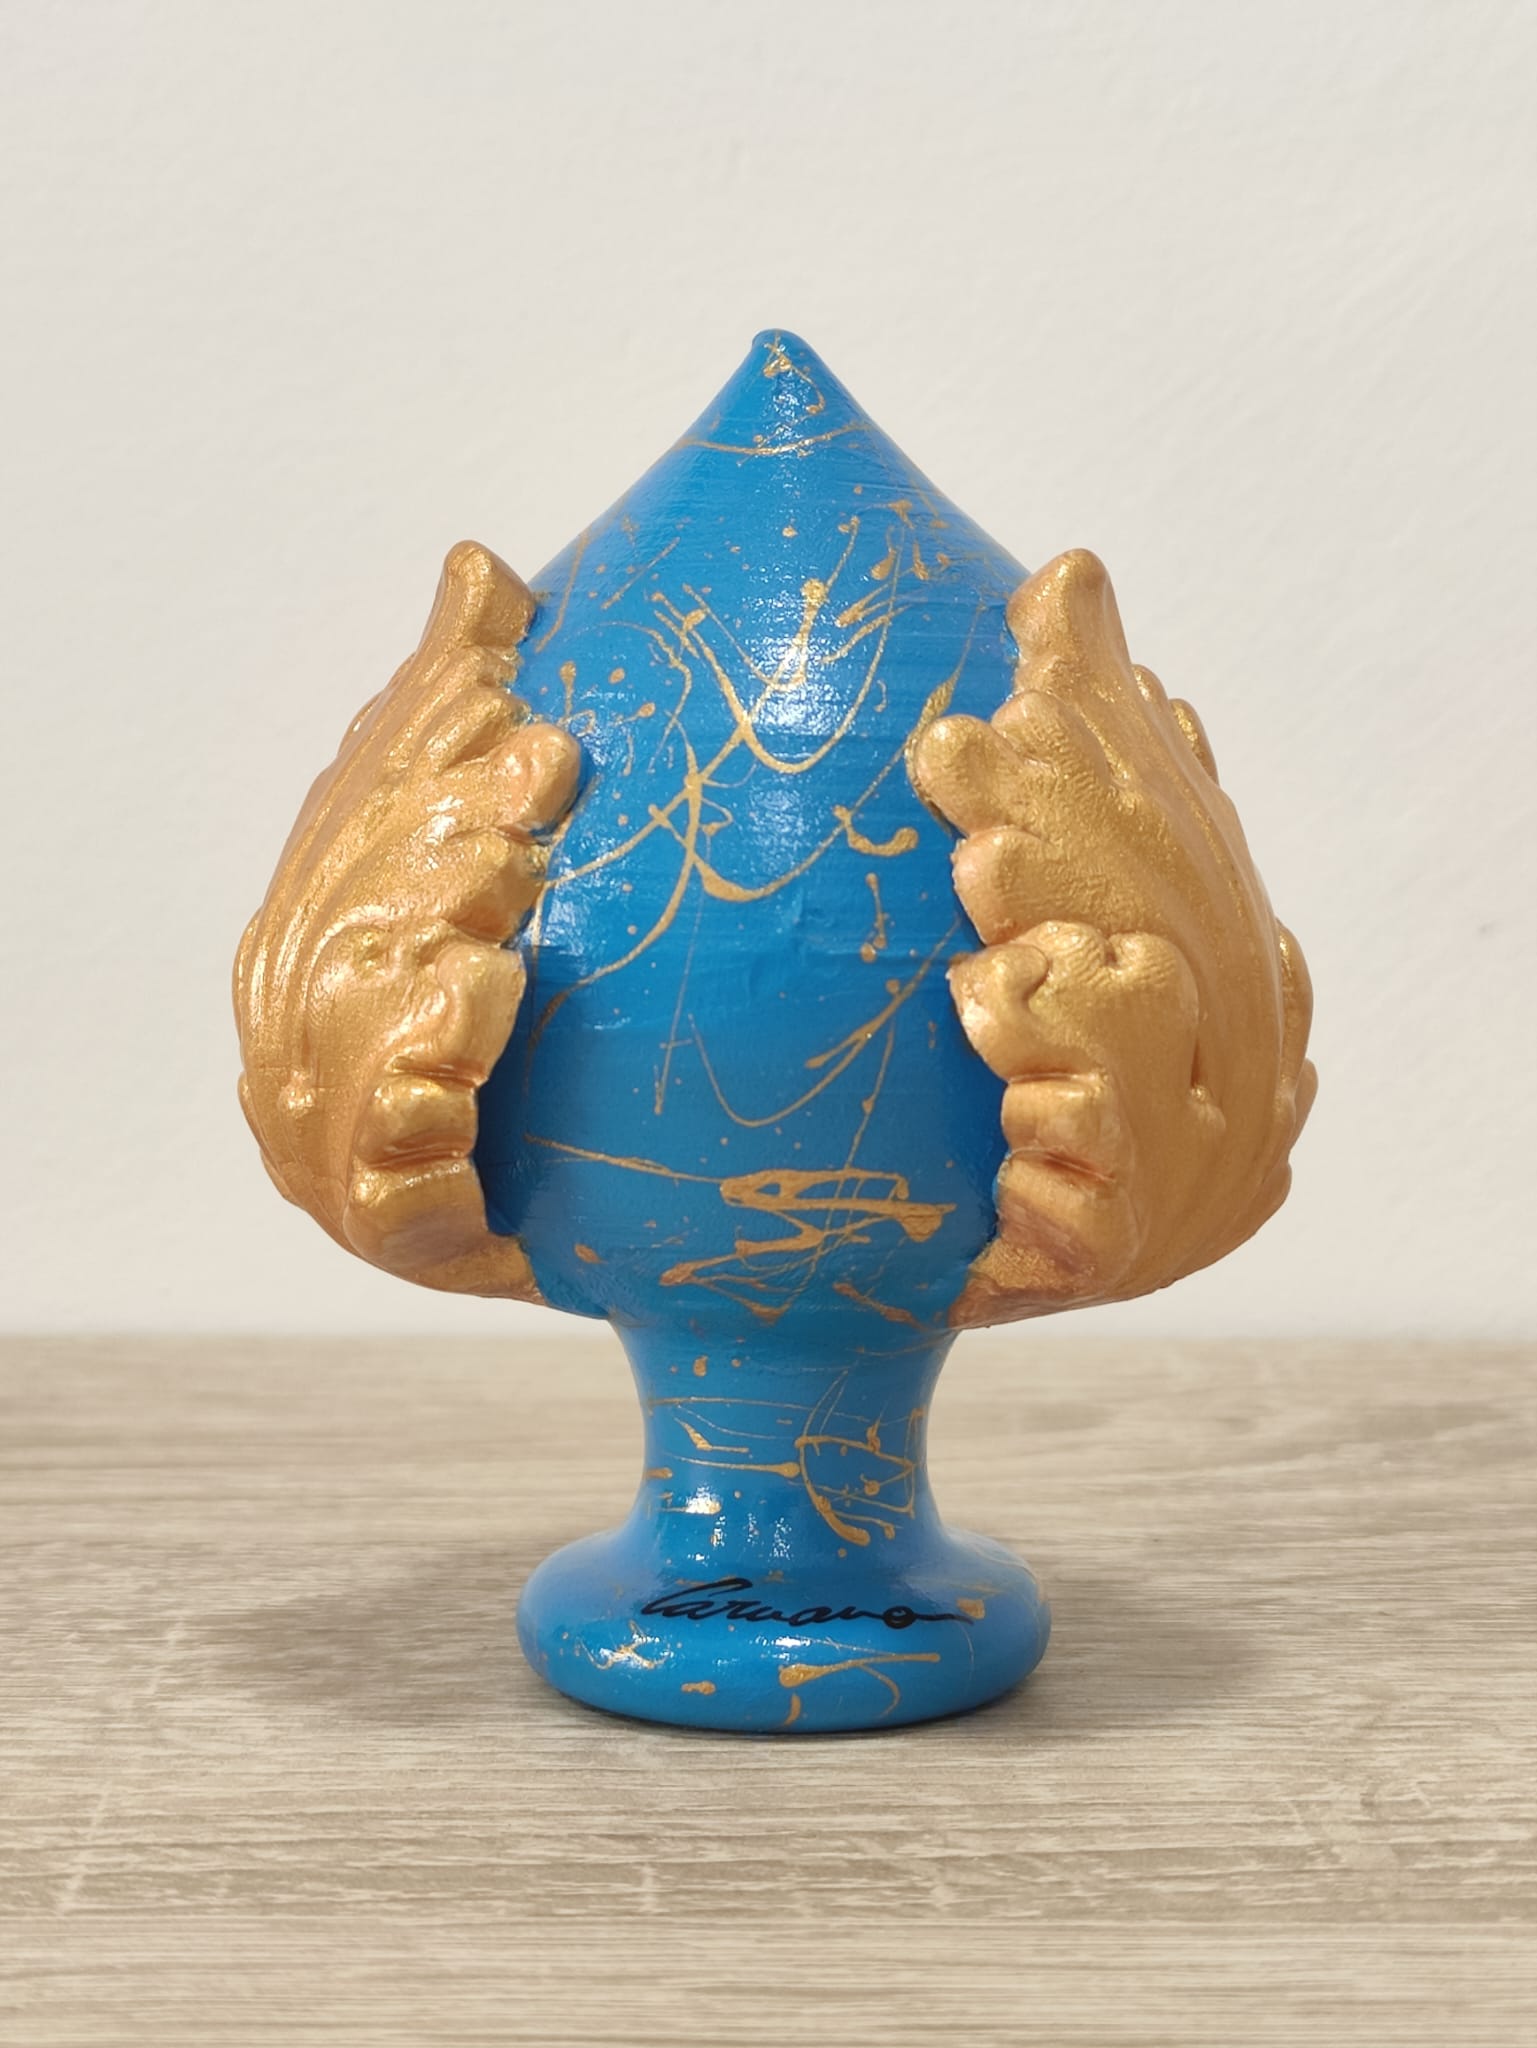 Pumo Pugliese in Ceramica Siciliana - 10 cm - Azzurro e Oro